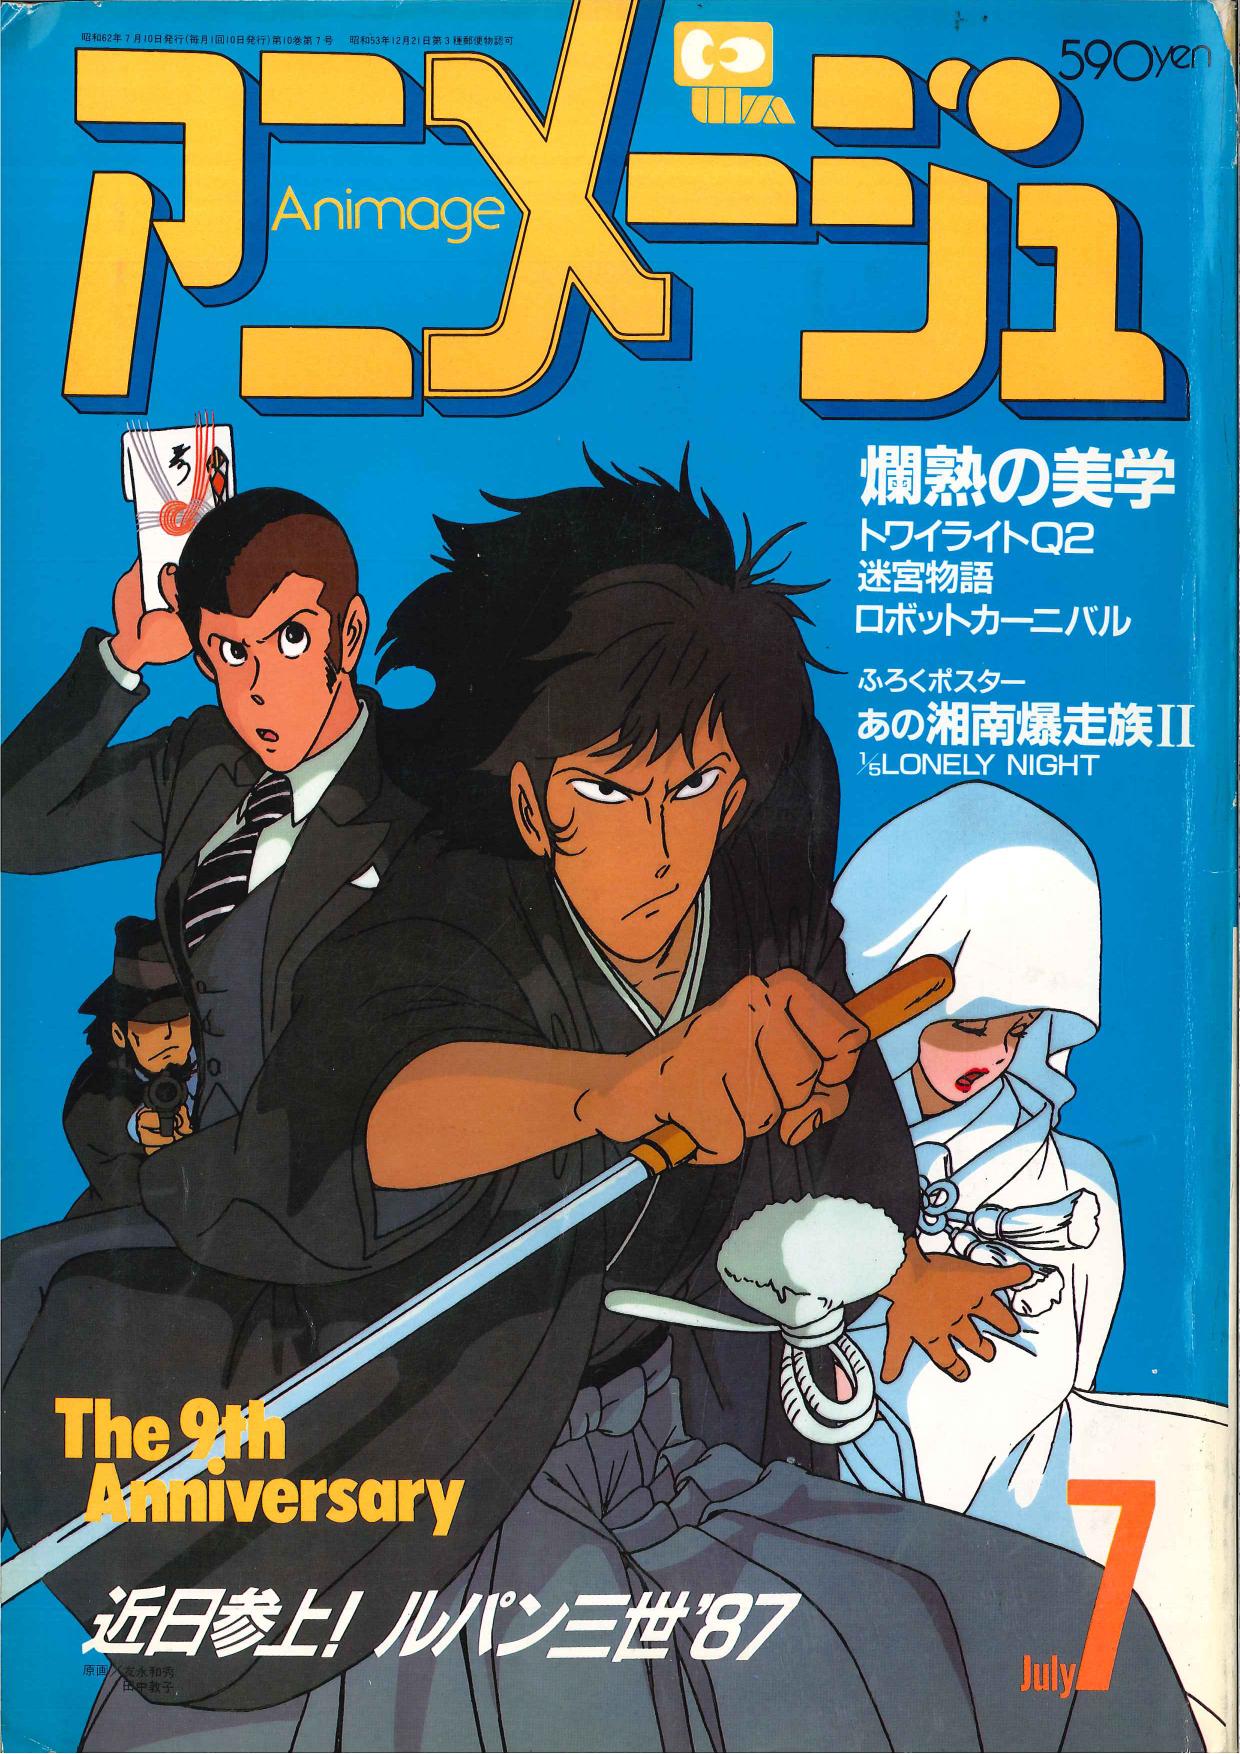 徳間書店 1987年 昭和62年 のアニメ雑誌 アニメージュ1987年 昭和62年 7月号 109 まんだらけ Mandarake